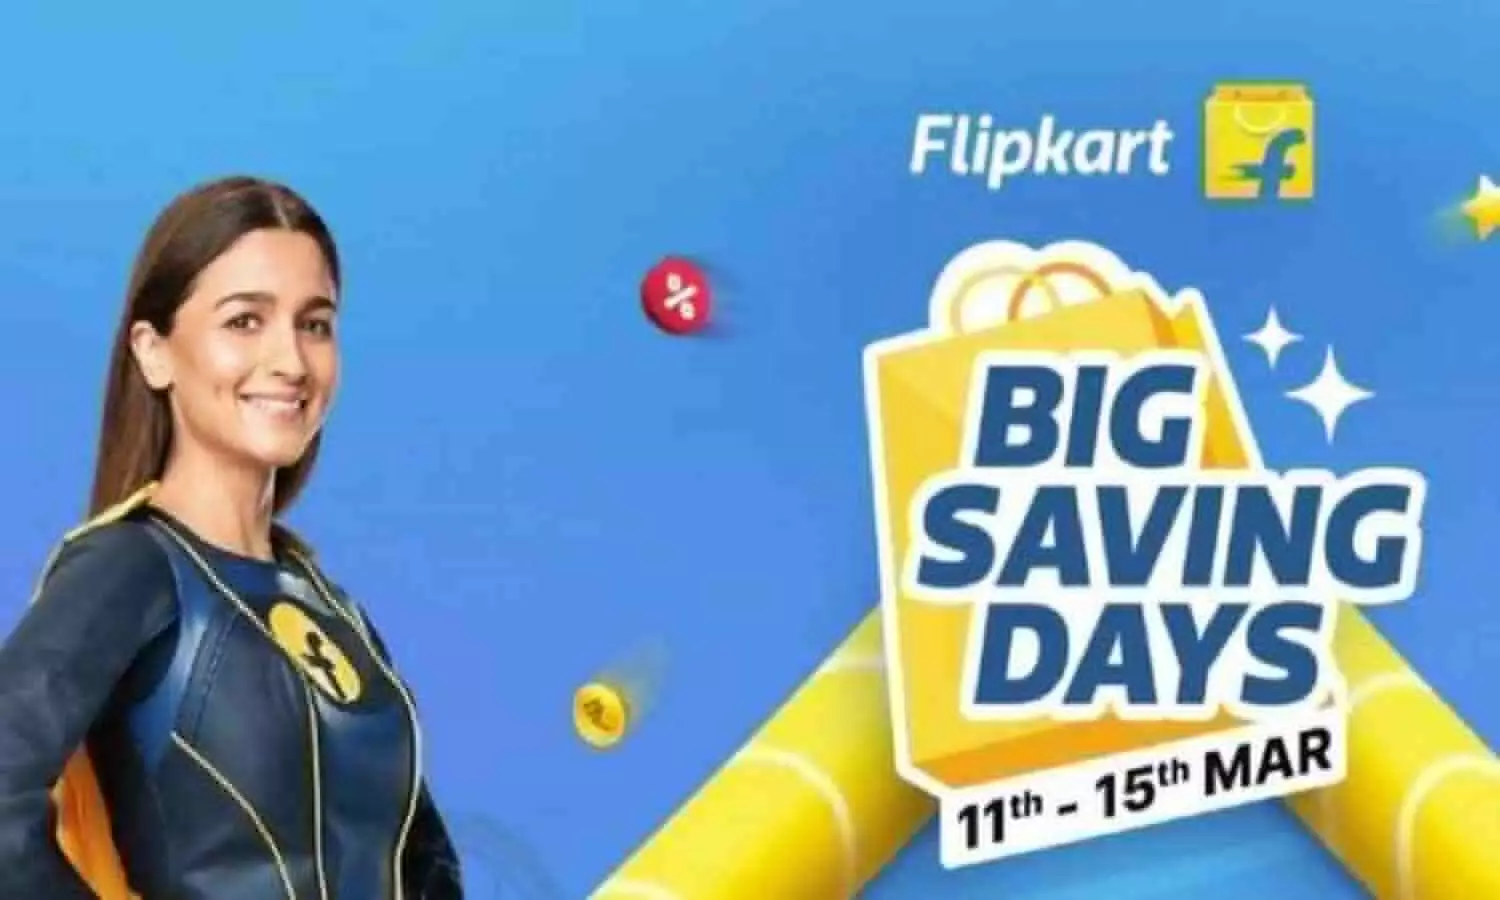 Flipkart Big Saving Days sale